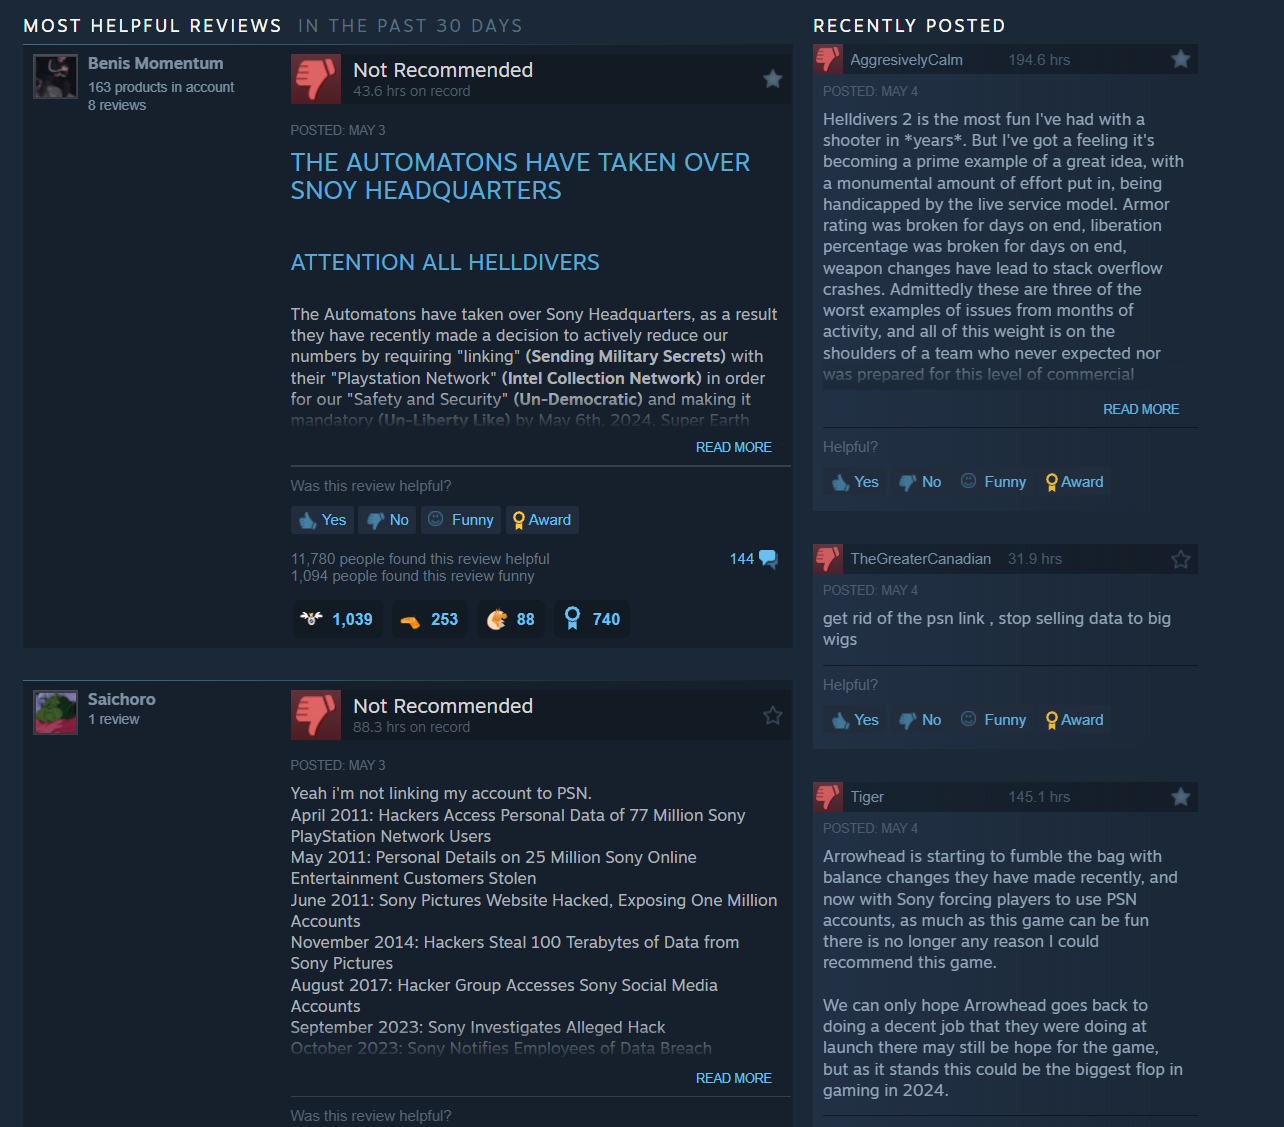 Helldivers 2 İncelemesi PSN Hesabı Bağlama Gereksinimi Sonrasında Steam’de Bombalandı, Arrowhead Çözüm İçin PlayStation ile Görüşüyor